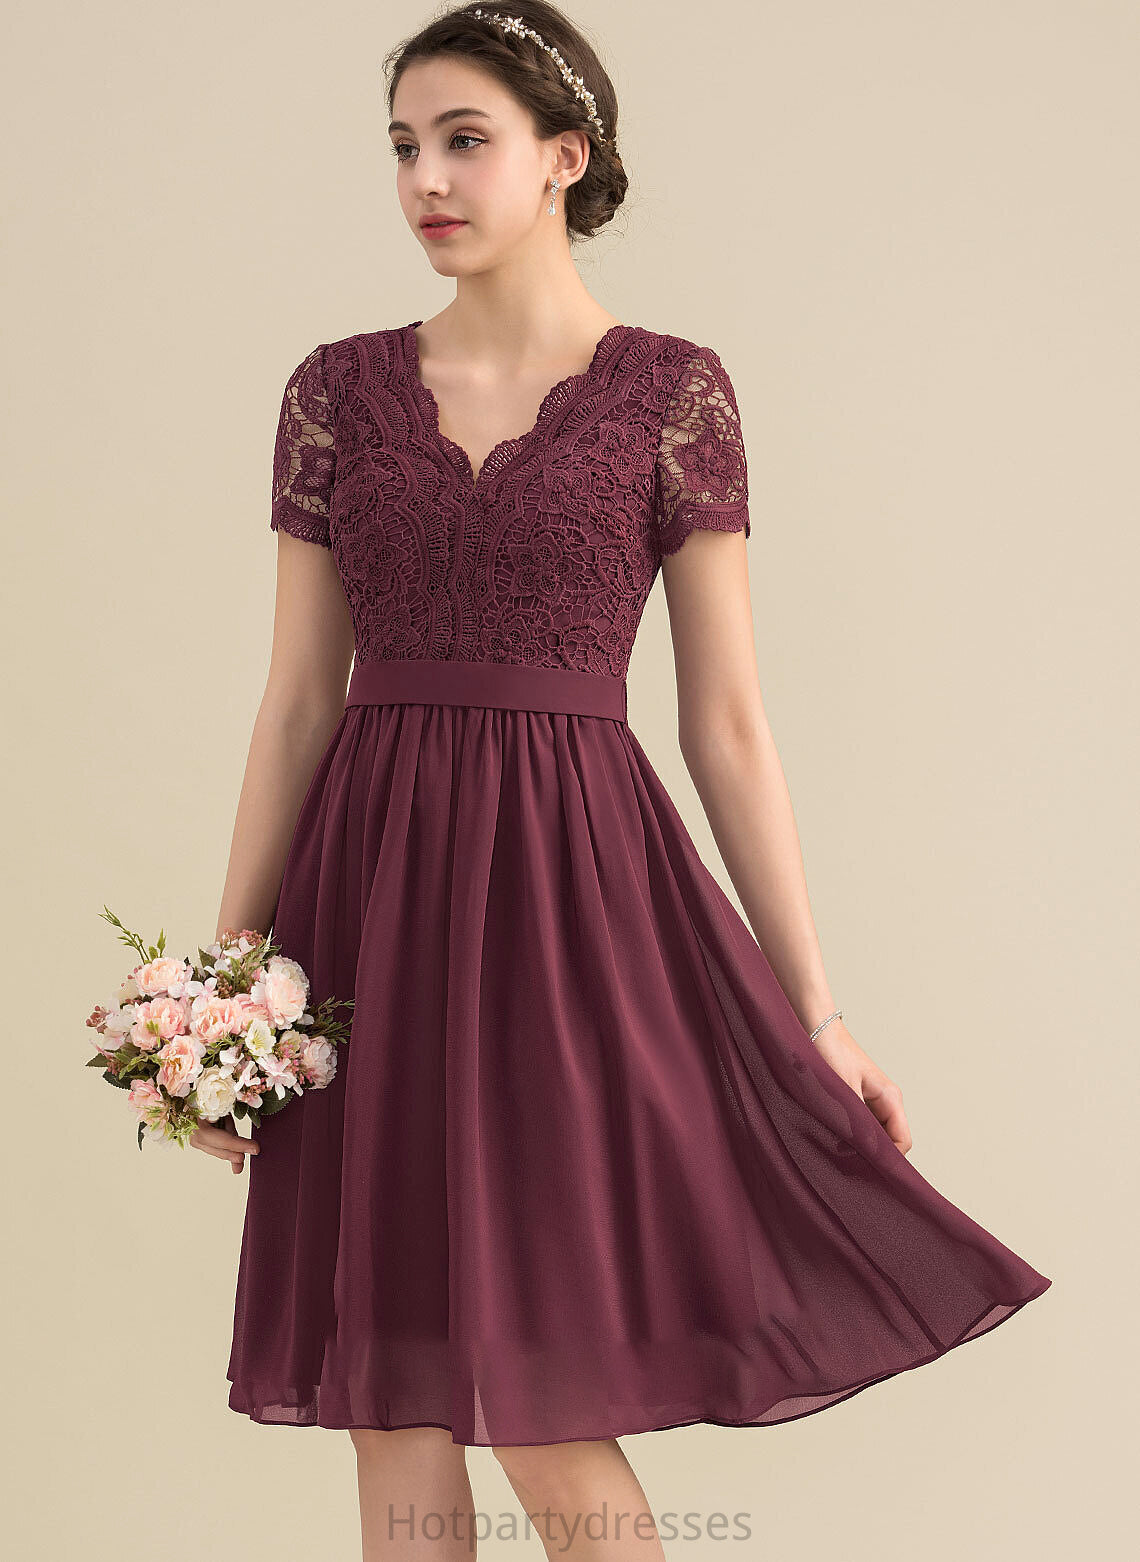 Knee-Length Neckline A-Line V-neck Lace Silhouette Length Straps Fabric Asia Floor Length Sleeveless Bridesmaid Dresses